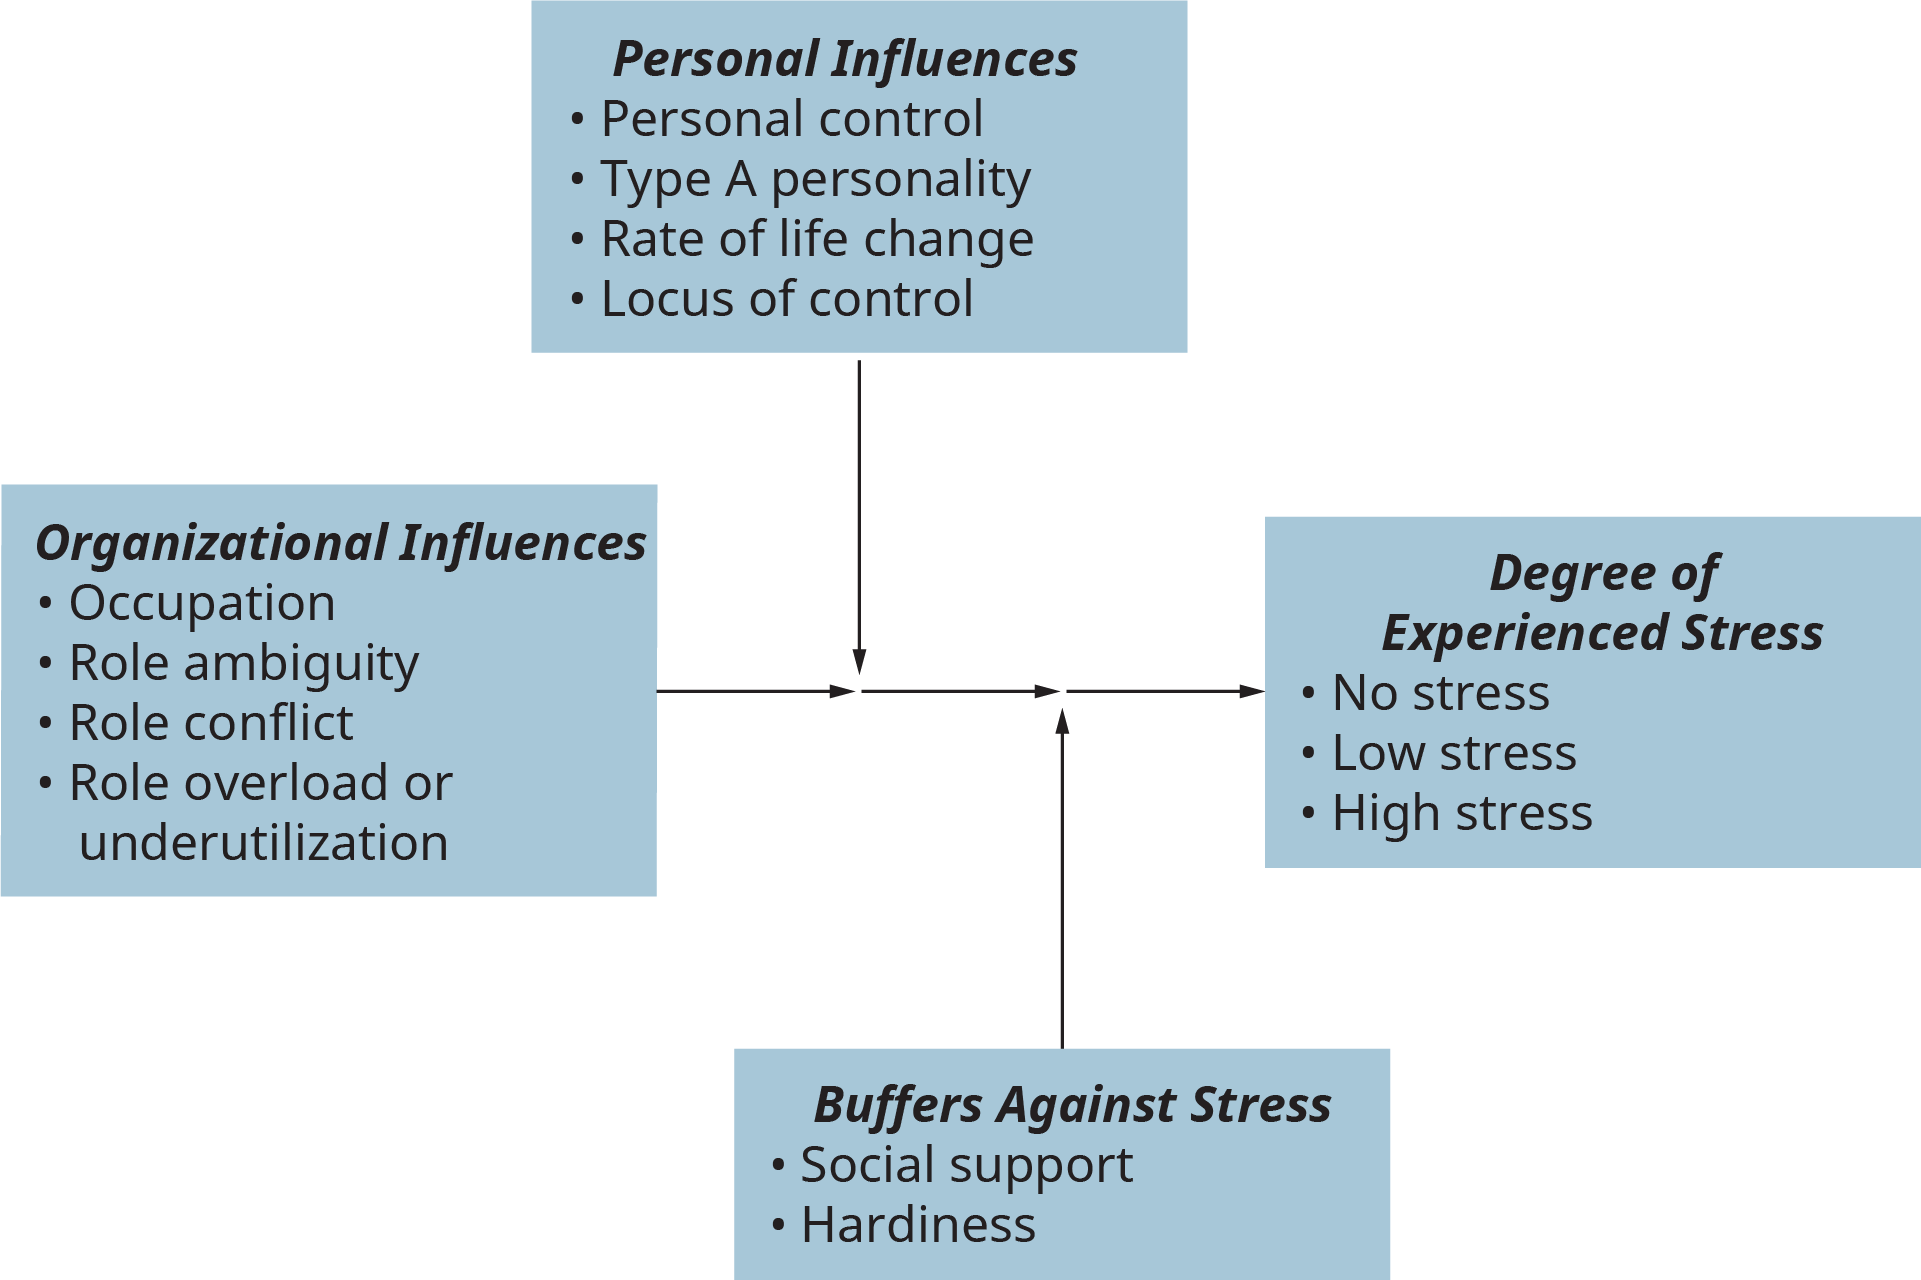 Une illustration montre les principales influences sur le stress lié au travail, les effets d'amortissement sur le stress lié au travail et le degré de stress vécu.